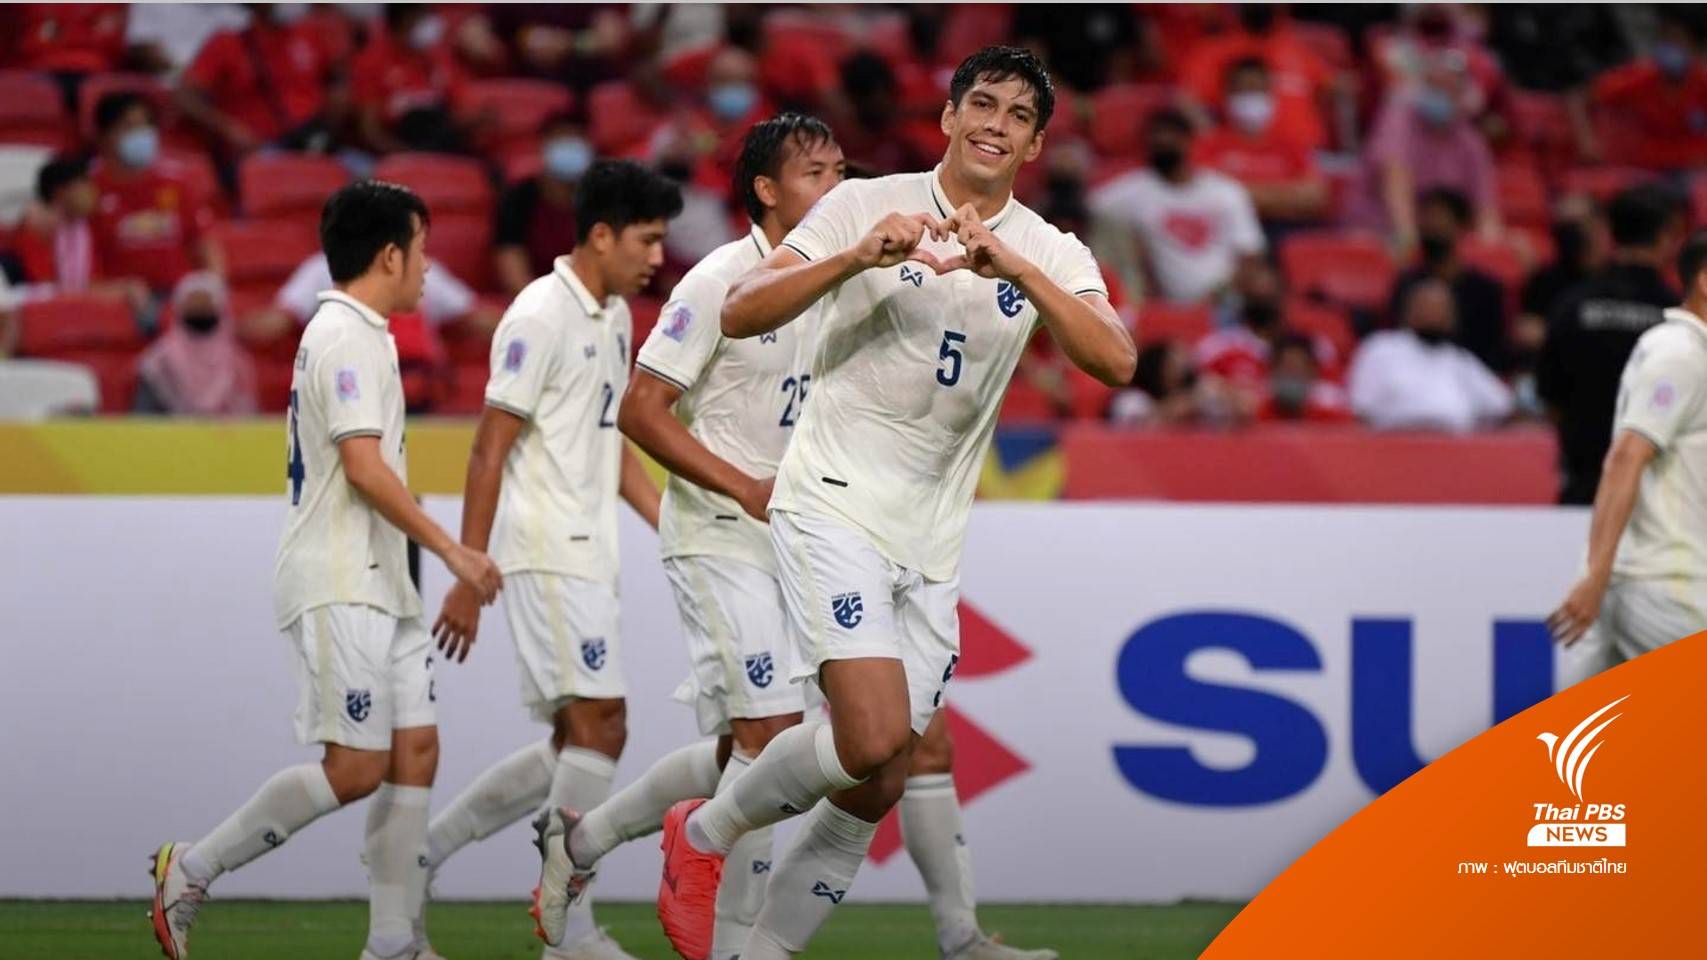 ทีมชาติไทย ชนะ สิงคโปร์ 2-0 คว้าแชมป์กลุ่มเอ ศึกชิงแชมป์อาเซียน 